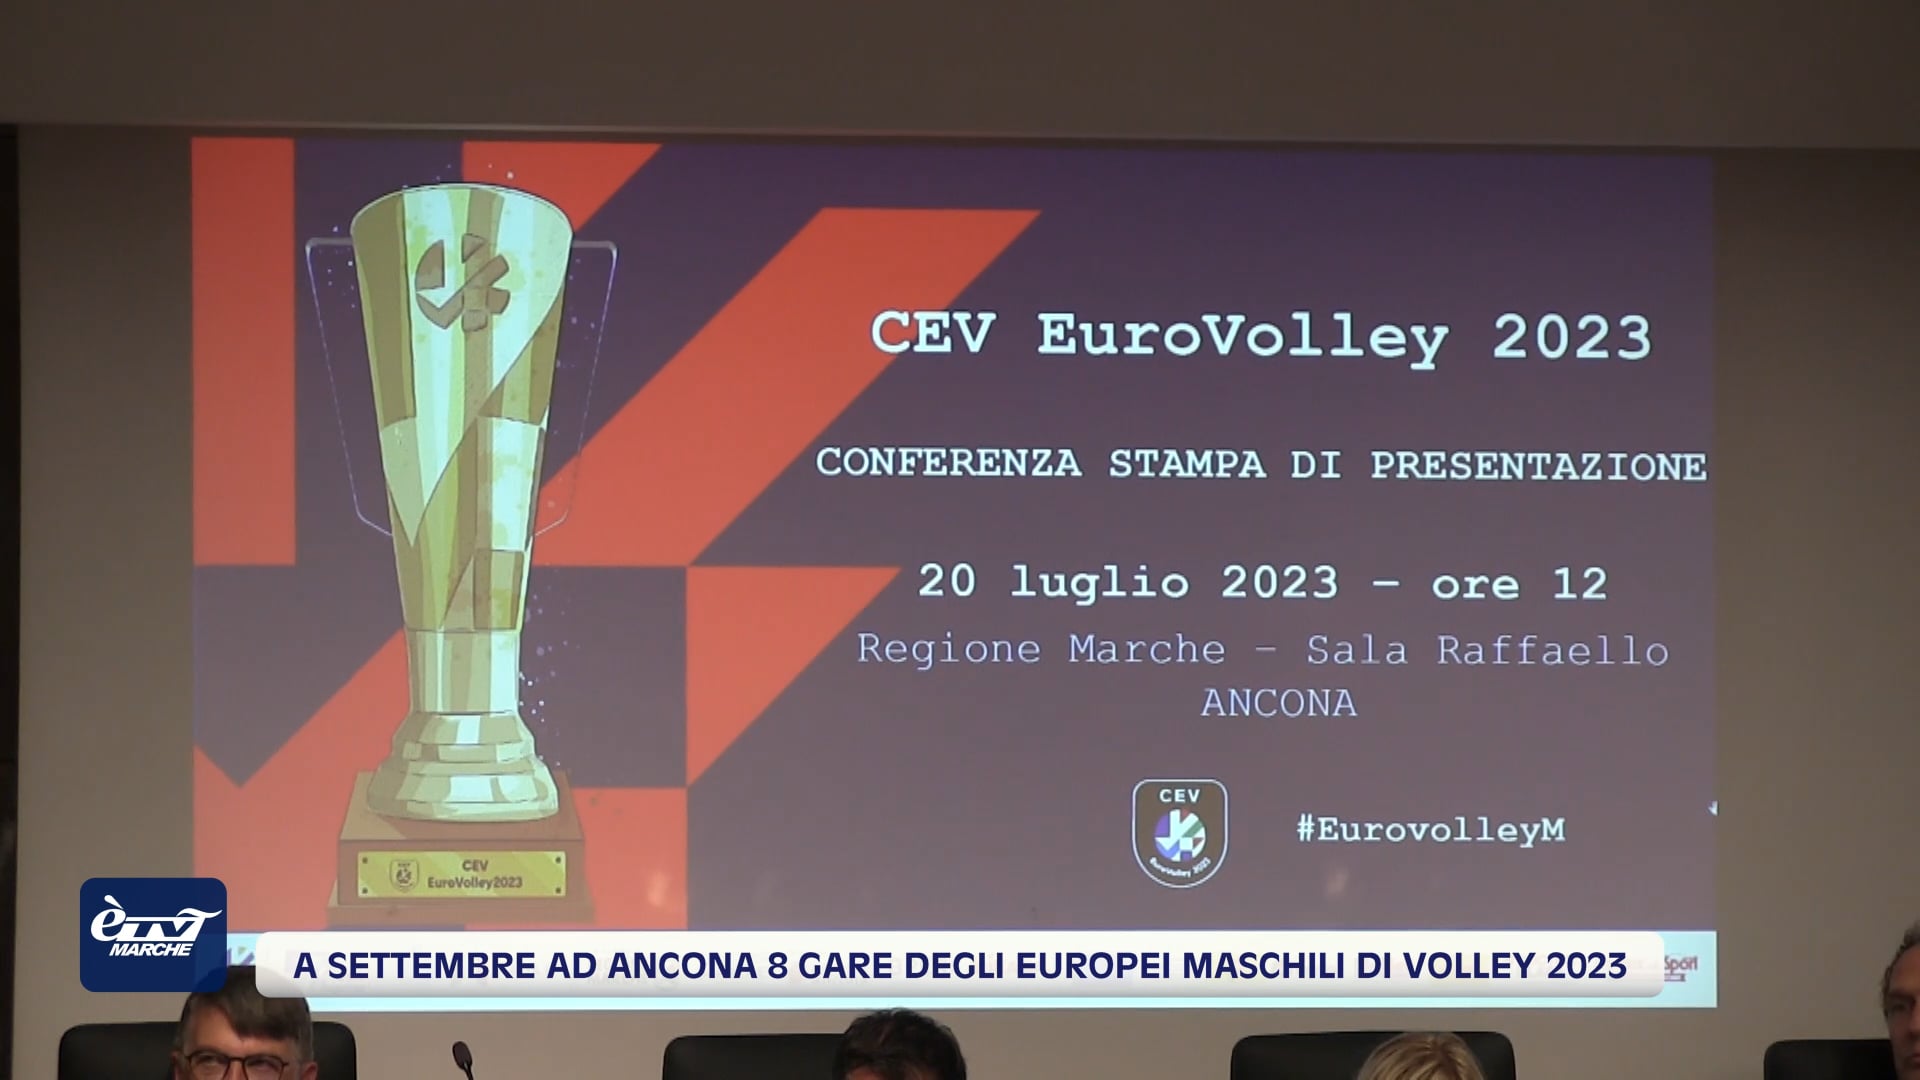 A settembre ad Ancona otto gare degli Europei maschili di volley 2023 - VIDEO